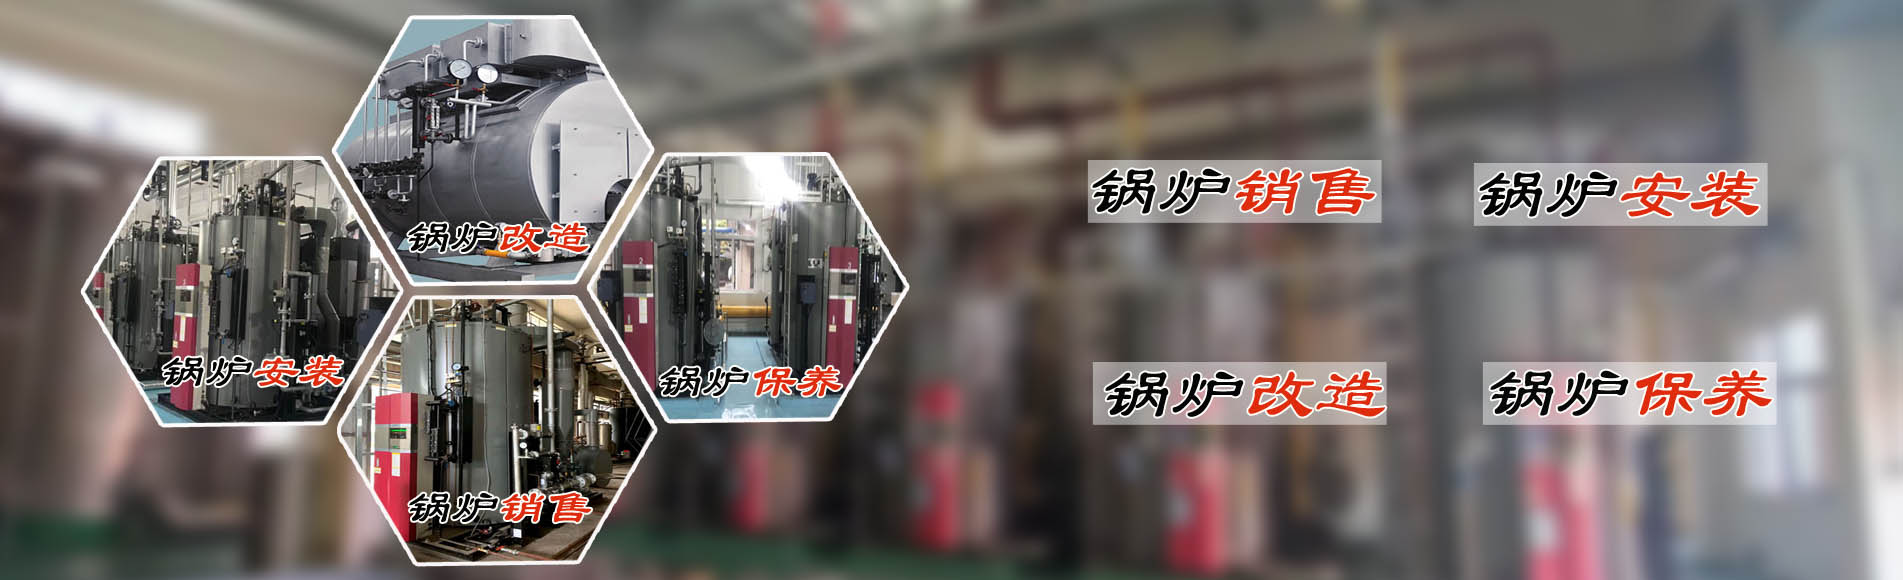 廣州希諾機電提供蒸汽節能鍋爐、熱水鍋爐安裝銷售、鍋爐改造、鍋爐維護保養服務。